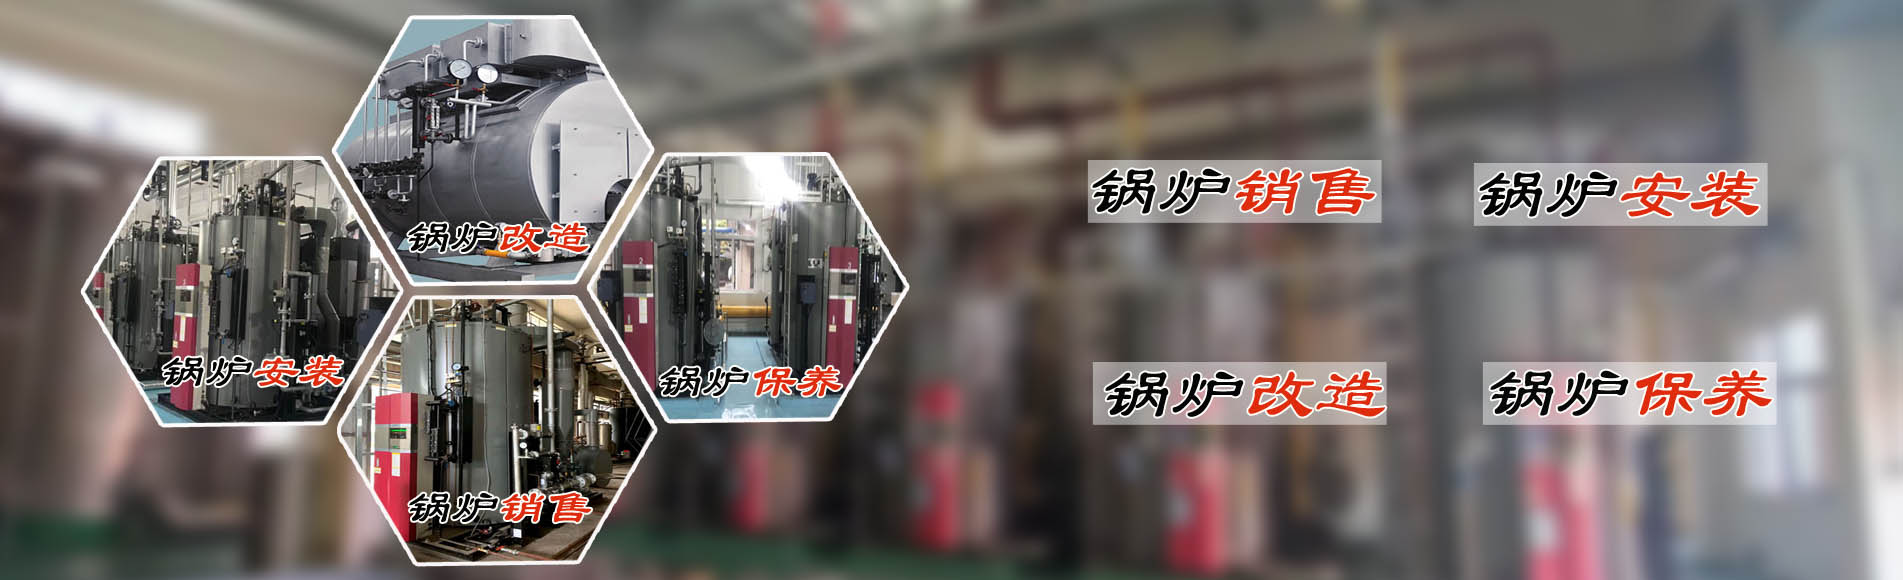 廣州希諾機電提供蒸汽節能鍋爐、熱水鍋爐安裝銷售、鍋爐改造、鍋爐維護保養服務。